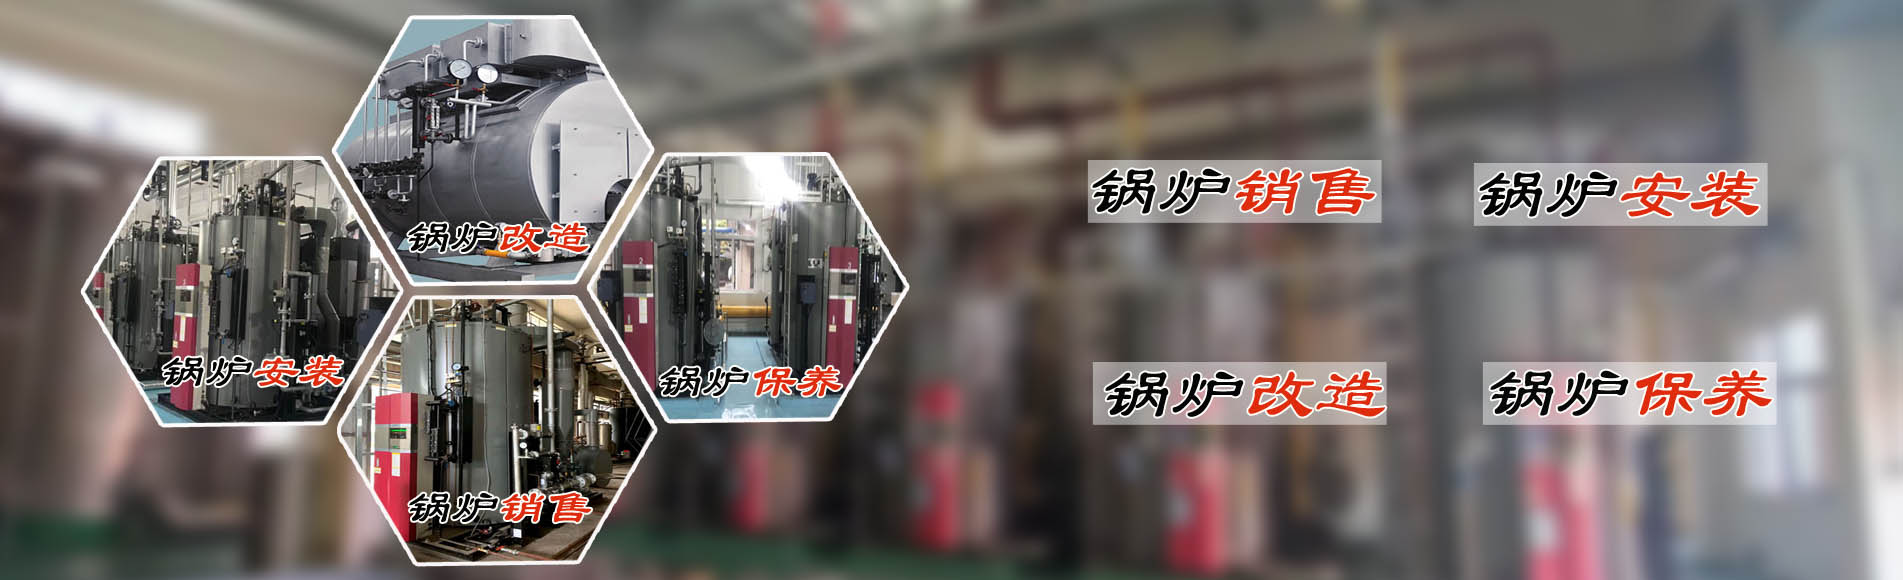 廣州希諾機電提供蒸汽節能鍋爐、熱水鍋爐安裝銷售、鍋爐改造、鍋爐維護保養服務。